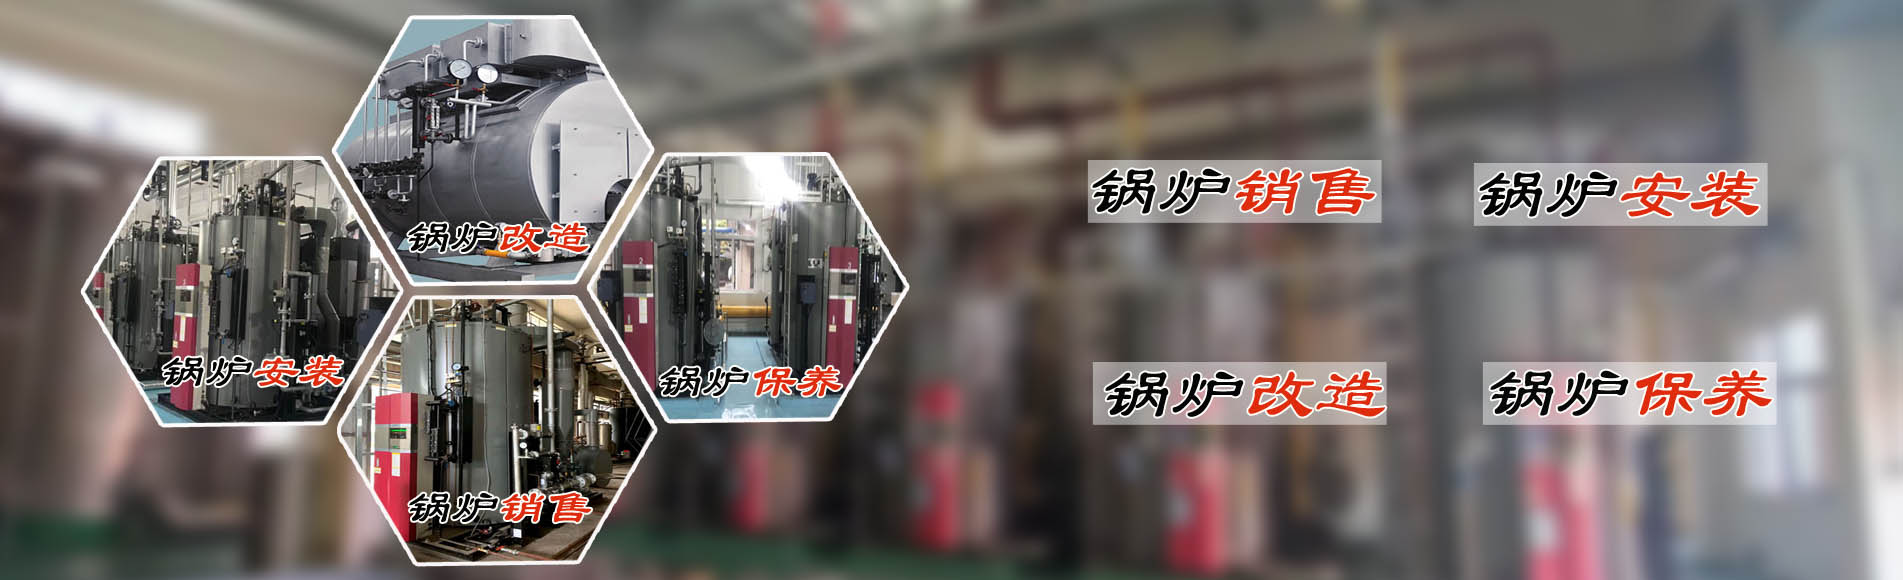 廣州希諾機電提供蒸汽節能鍋爐、熱水鍋爐安裝銷售、鍋爐改造、鍋爐維護保養服務。